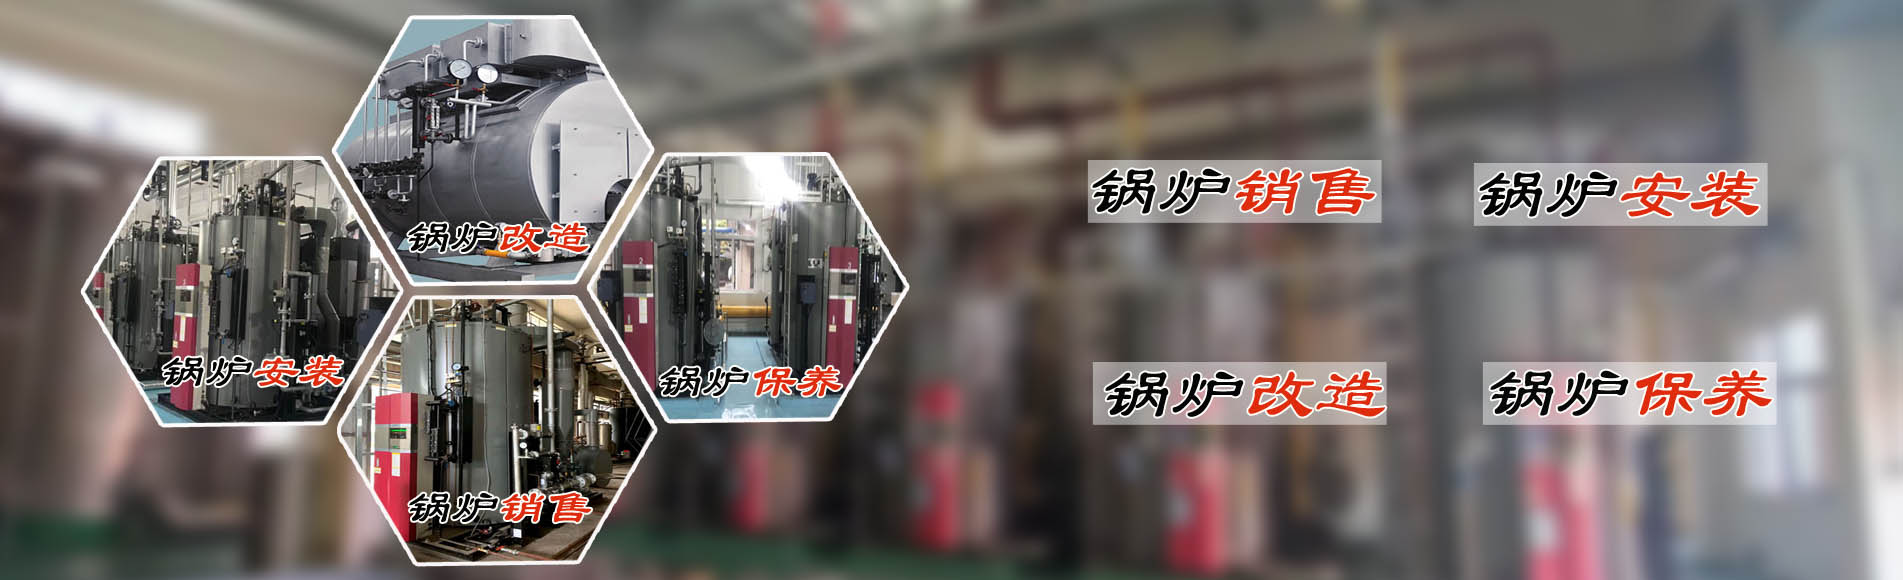 廣州希諾機電提供蒸汽節能鍋爐、熱水鍋爐安裝銷售、鍋爐改造、鍋爐維護保養服務。